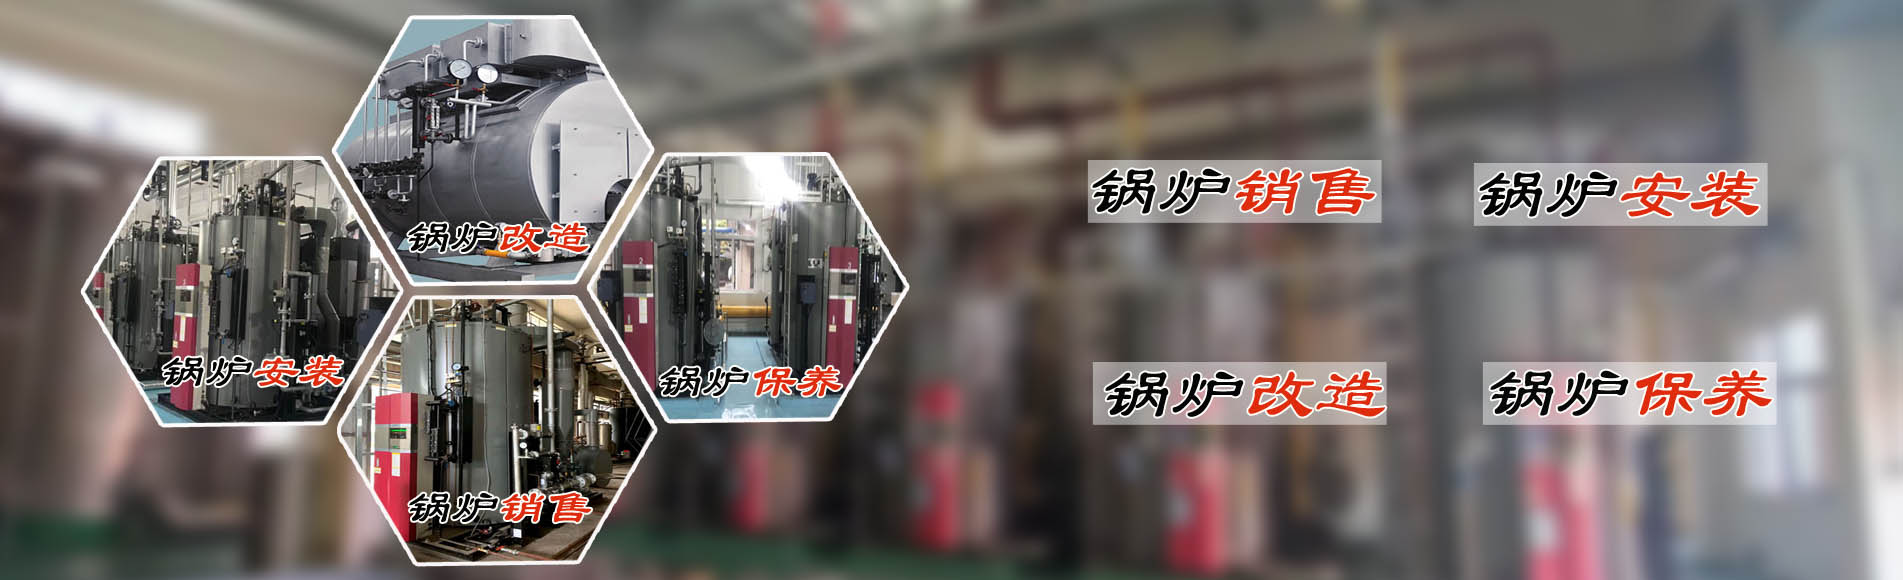 廣州希諾機電提供蒸汽節能鍋爐、熱水鍋爐安裝銷售、鍋爐改造、鍋爐維護保養服務。